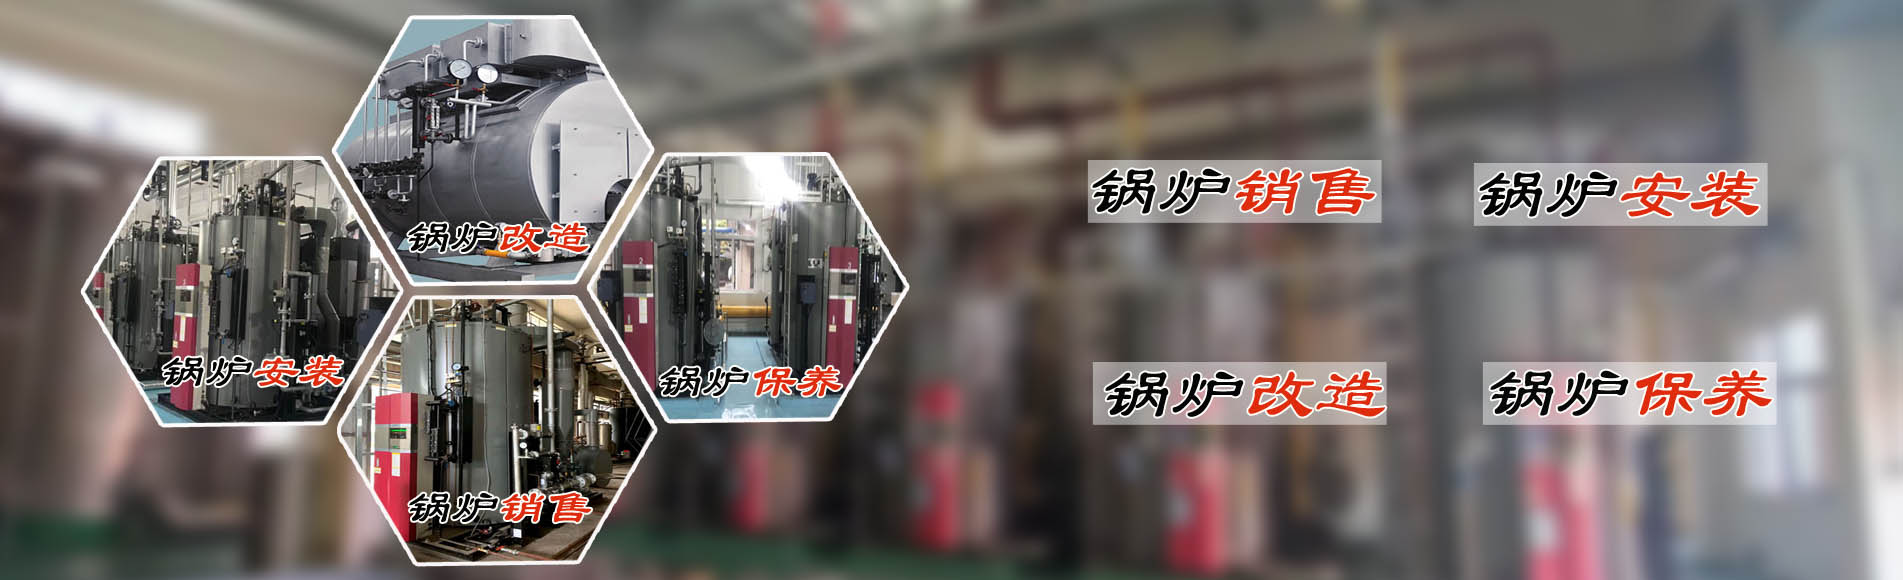 廣州希諾機電提供蒸汽節能鍋爐、熱水鍋爐安裝銷售、鍋爐改造、鍋爐維護保養服務。